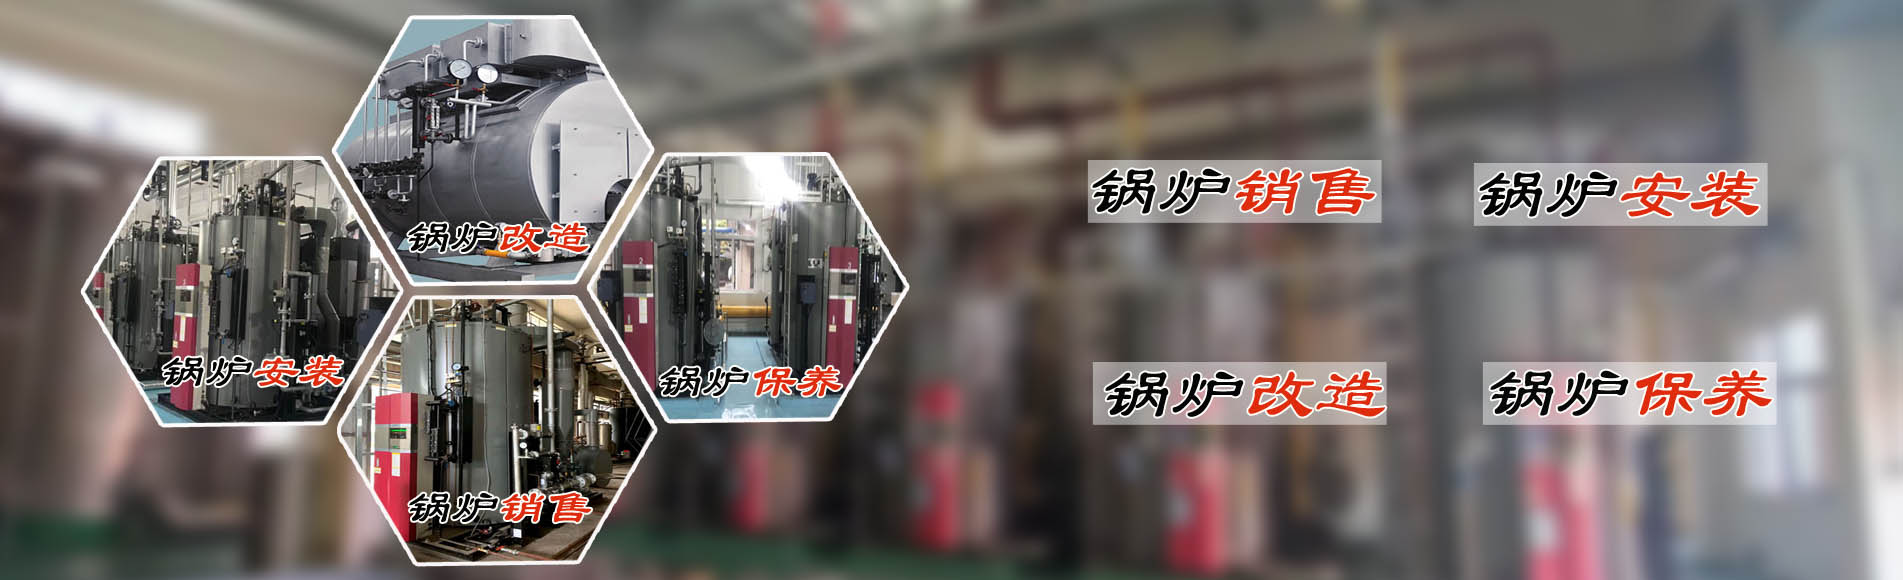 廣州希諾機電提供蒸汽節能鍋爐、熱水鍋爐安裝銷售、鍋爐改造、鍋爐維護保養服務。